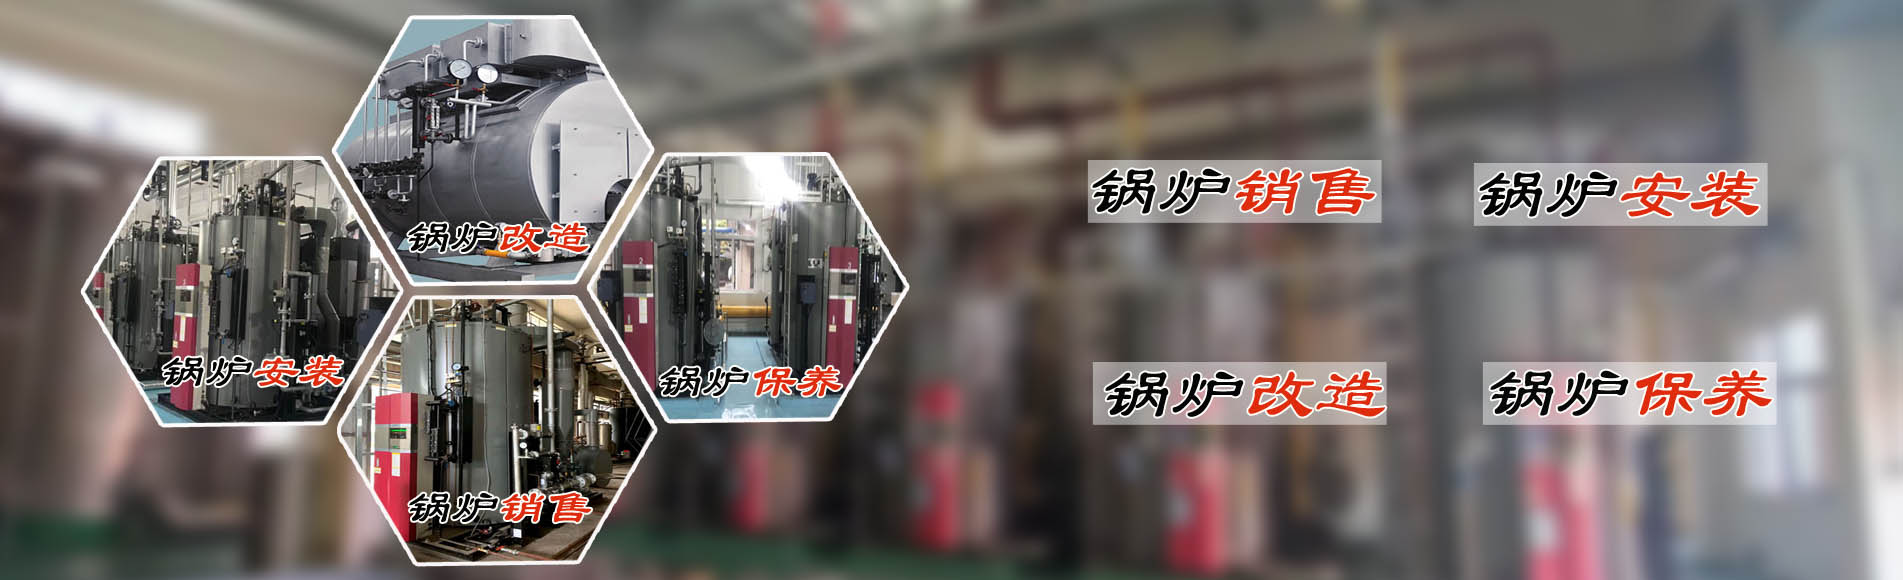 廣州希諾機電提供蒸汽節能鍋爐、熱水鍋爐安裝銷售、鍋爐改造、鍋爐維護保養服務。